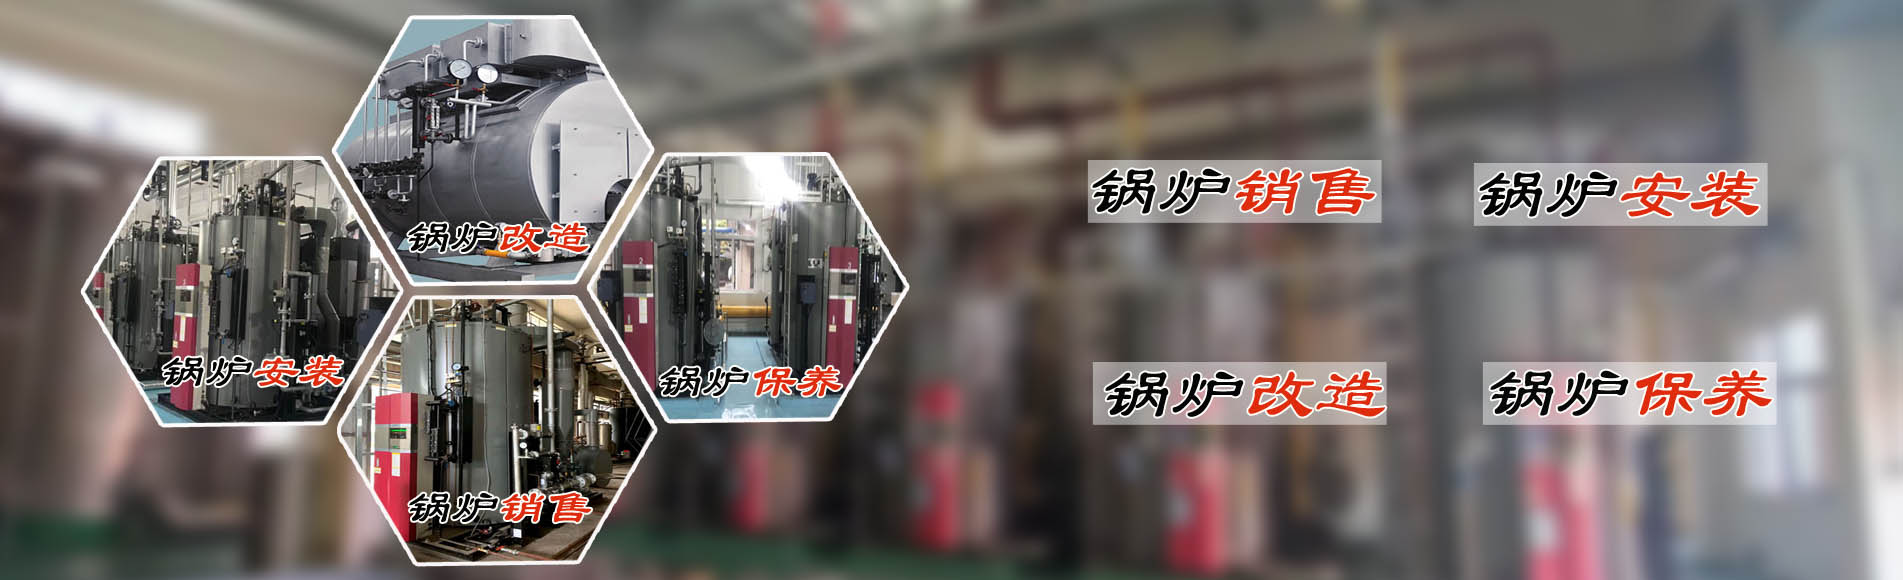 廣州希諾機電提供蒸汽節能鍋爐、熱水鍋爐安裝銷售、鍋爐改造、鍋爐維護保養服務。